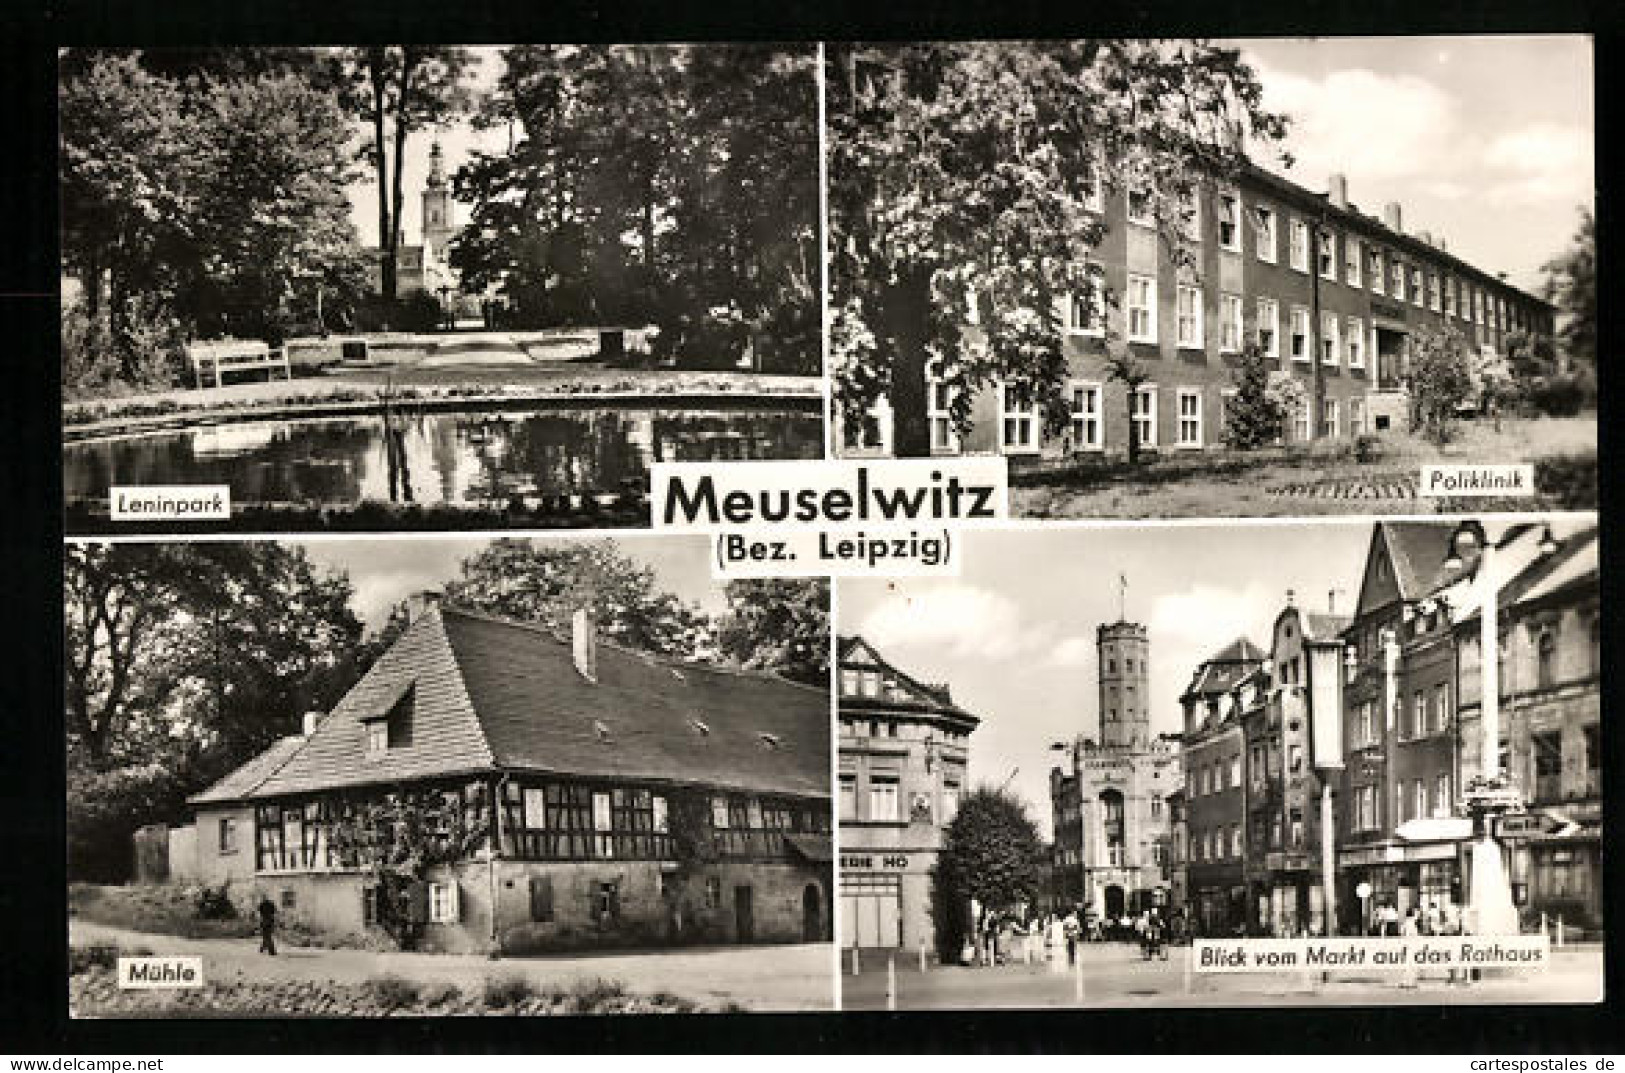 AK Meuselwitz /Bez. Leipzig, Leninpark, Mühle, Poliklinik  - Meuselwitz